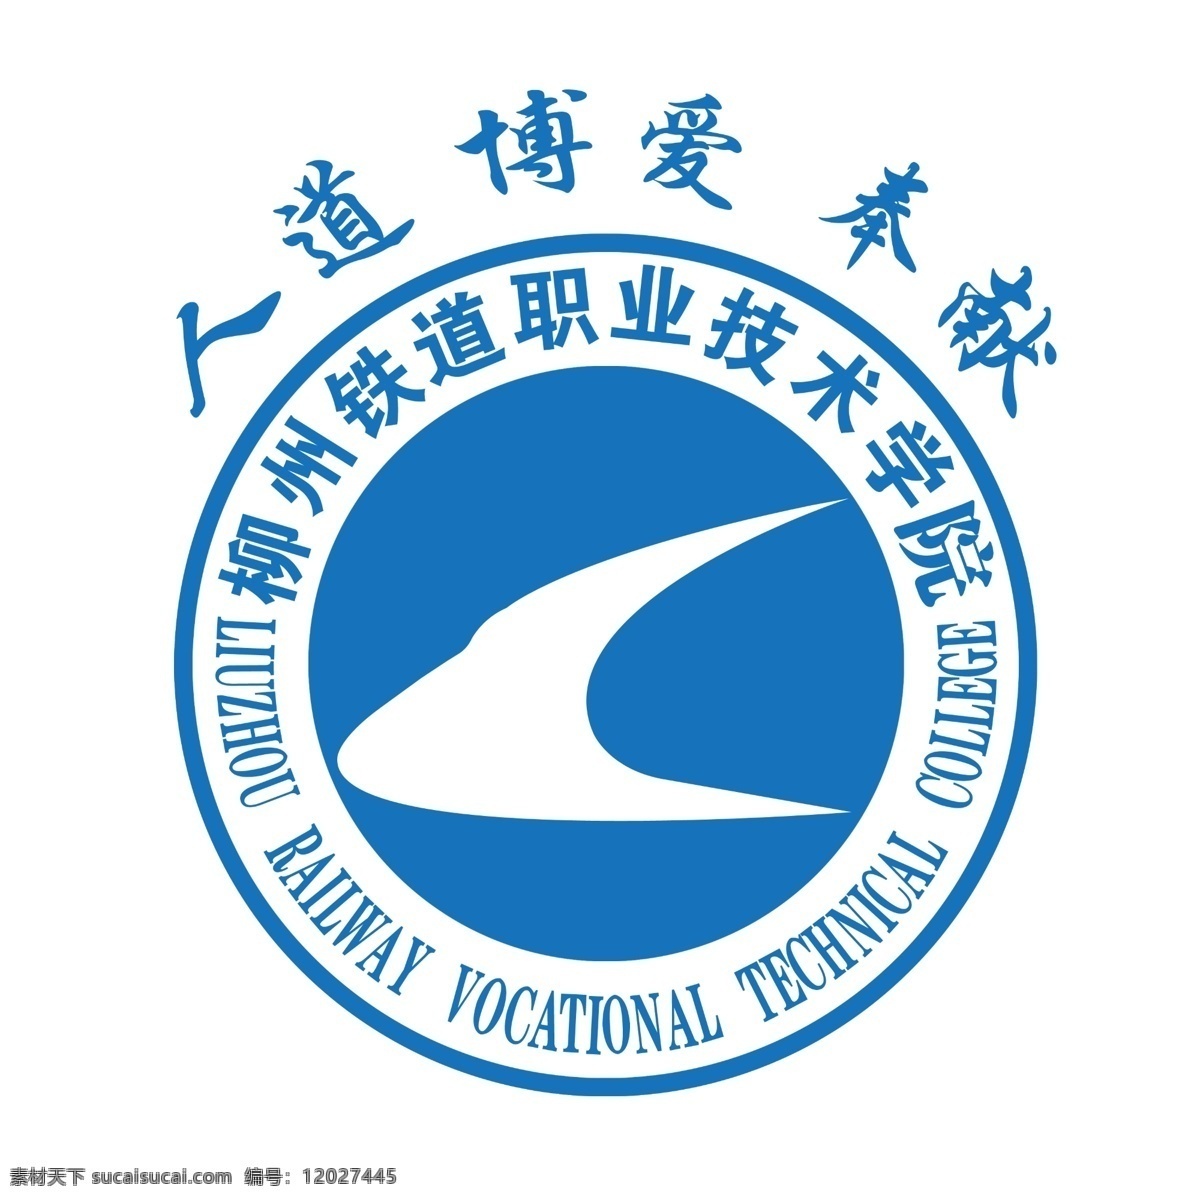 柳州 铁道 职业 技术 学院 柳州铁道职业 技术学院标志 学校标志 可以改字 铁路学院 标志图标 公共标识标志